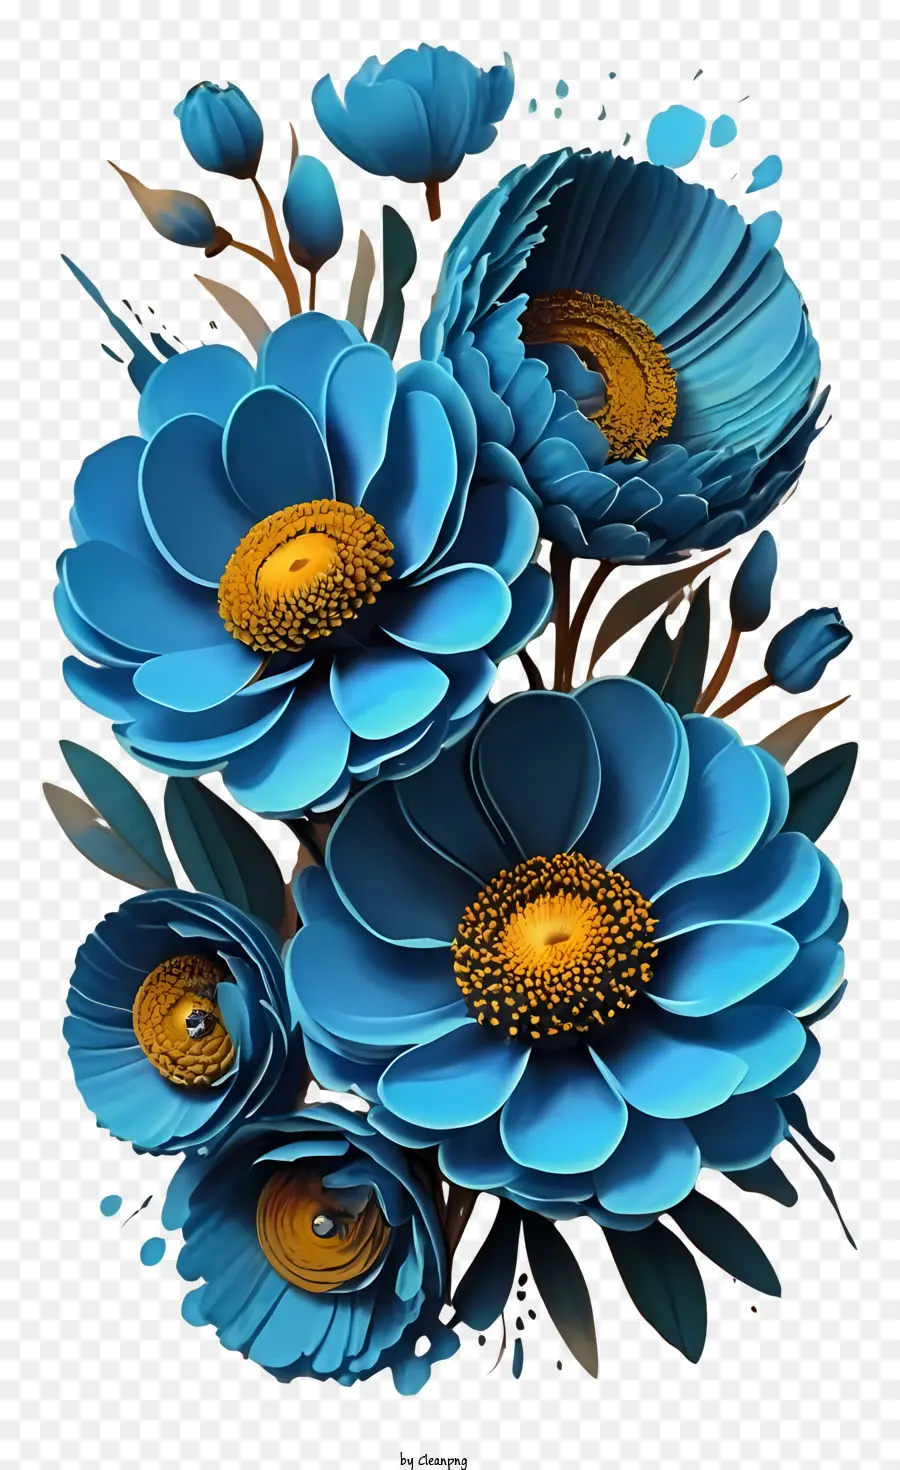 la disposizione dei fiori - Composizione floreale realistica con tonalità blu sul nero